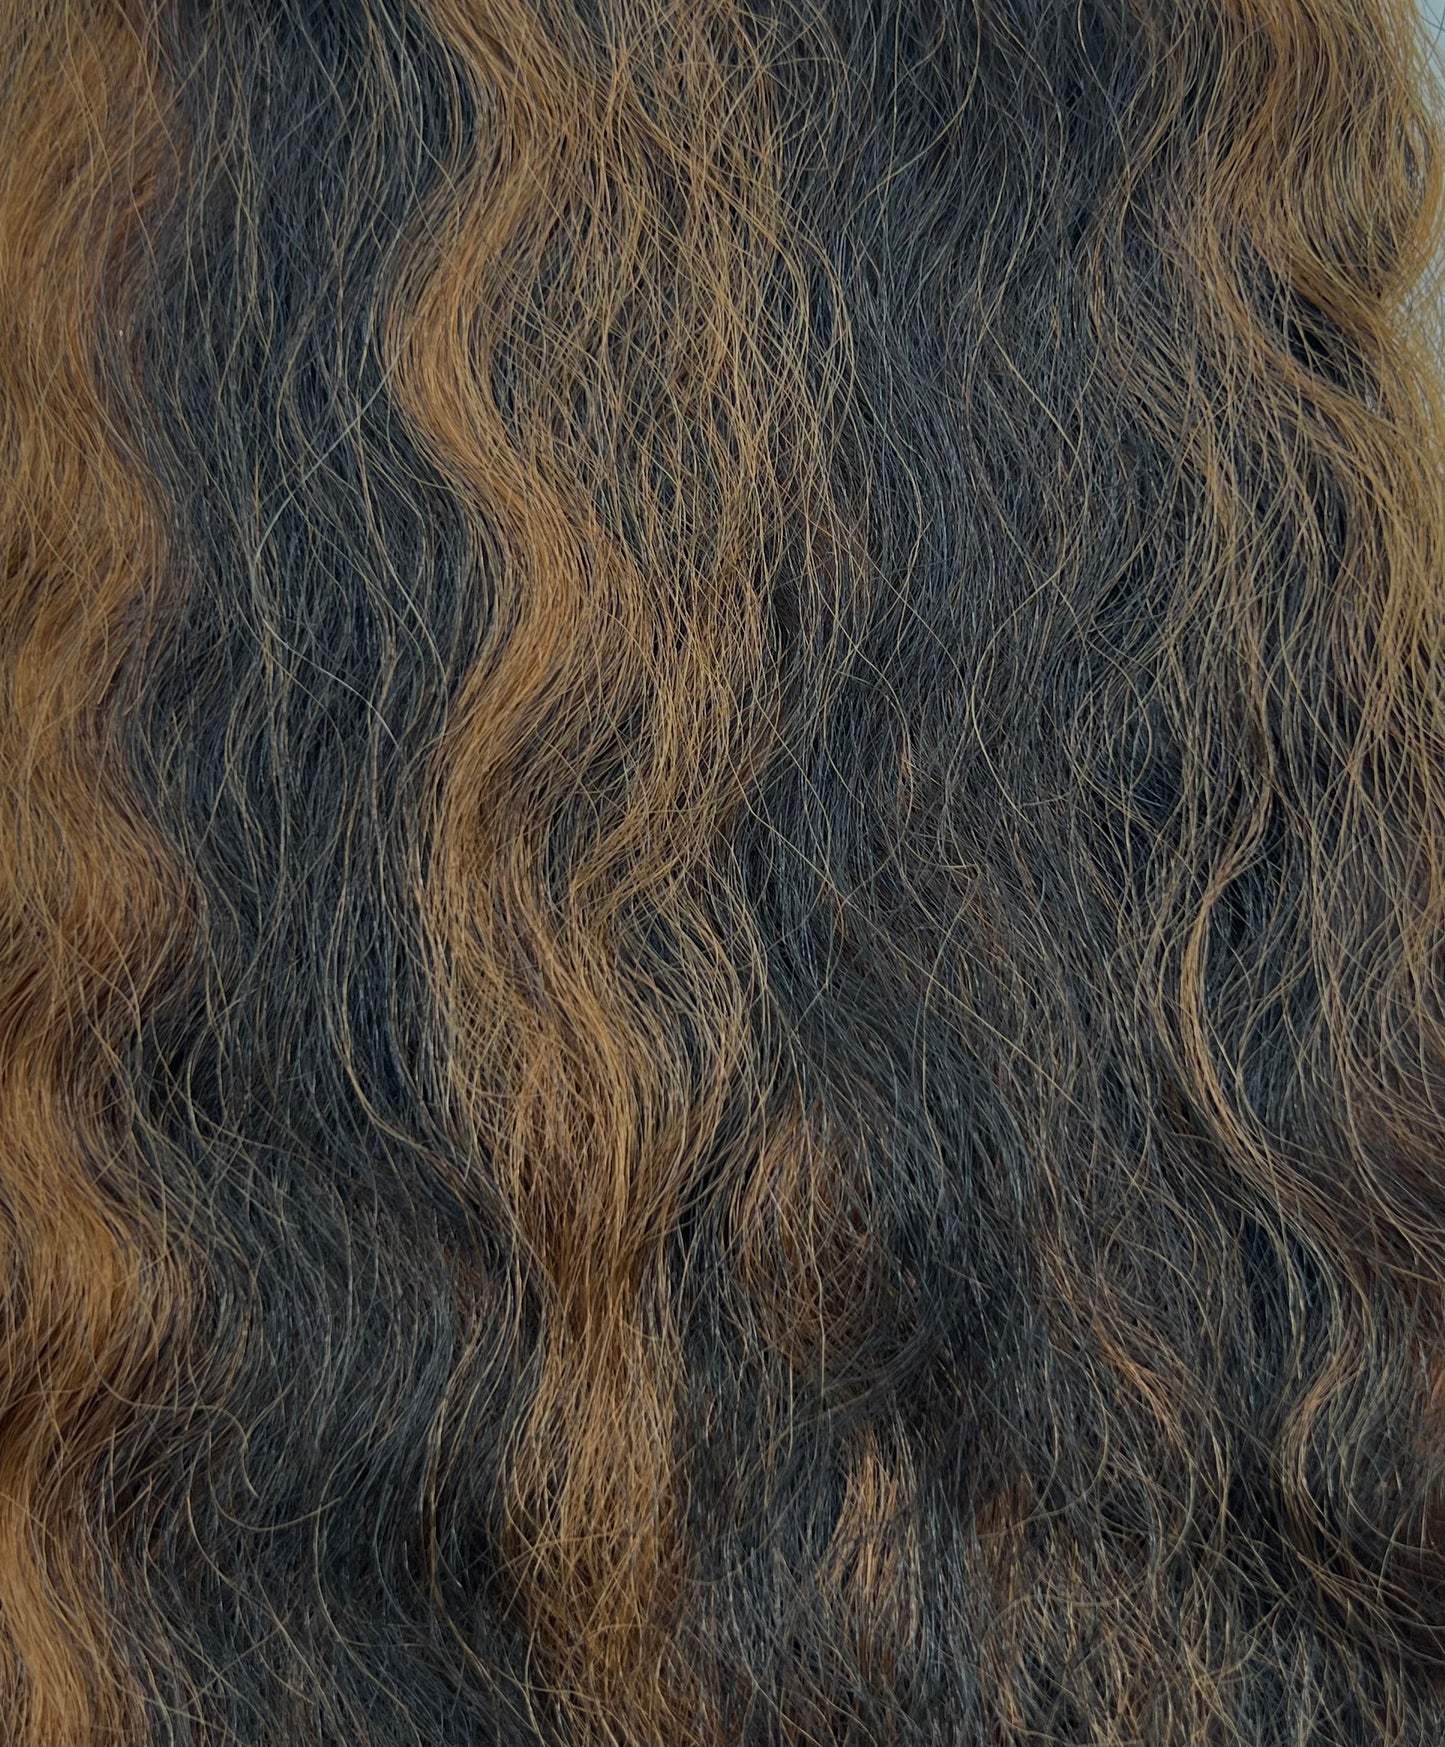 TRESS Collection Human Hair Blend - Super Bulk 16